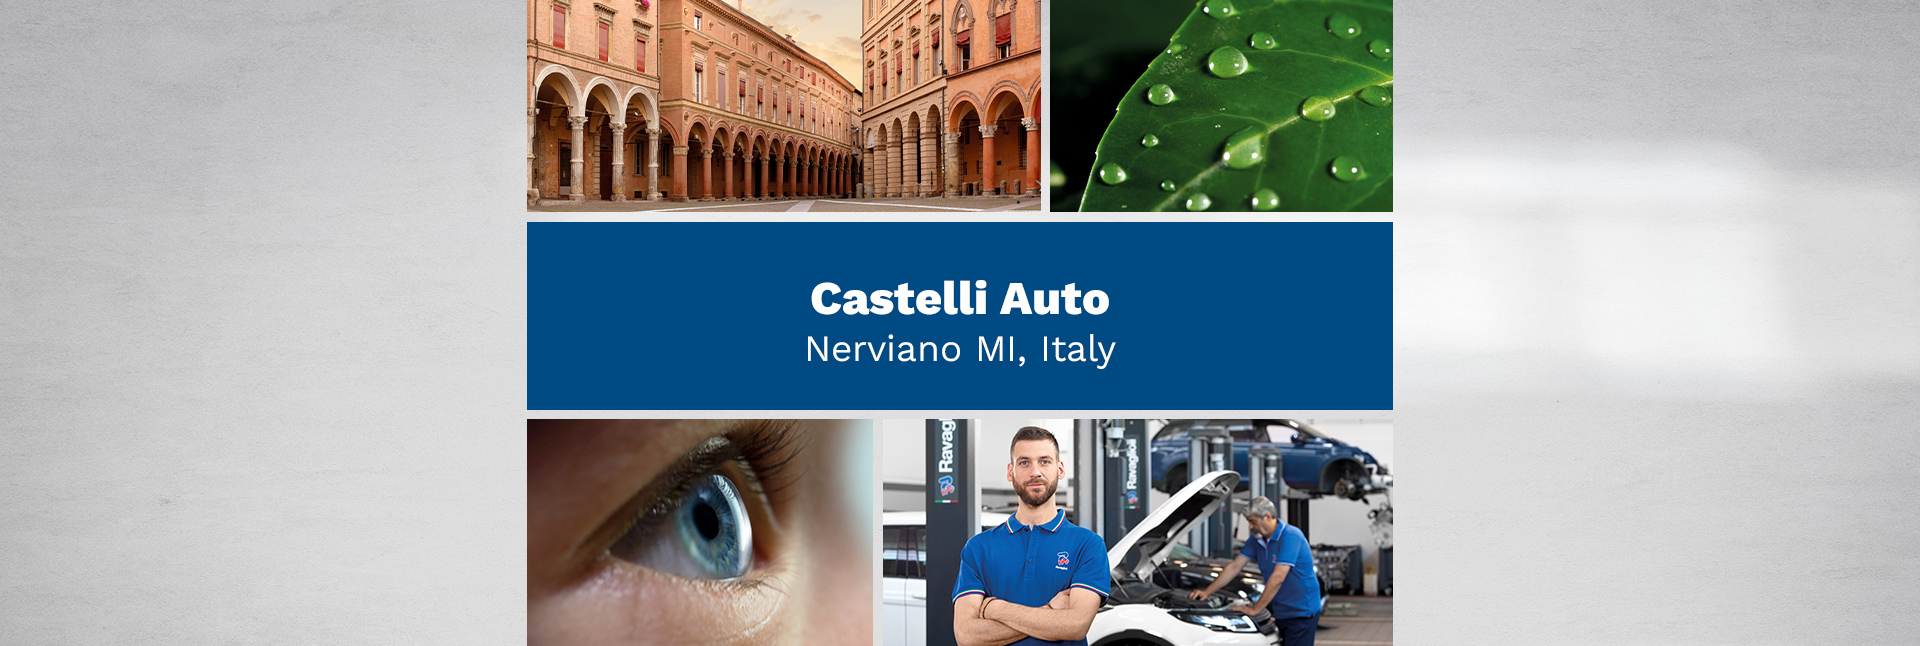 Castelli Auto – Nerviano MI, Italy